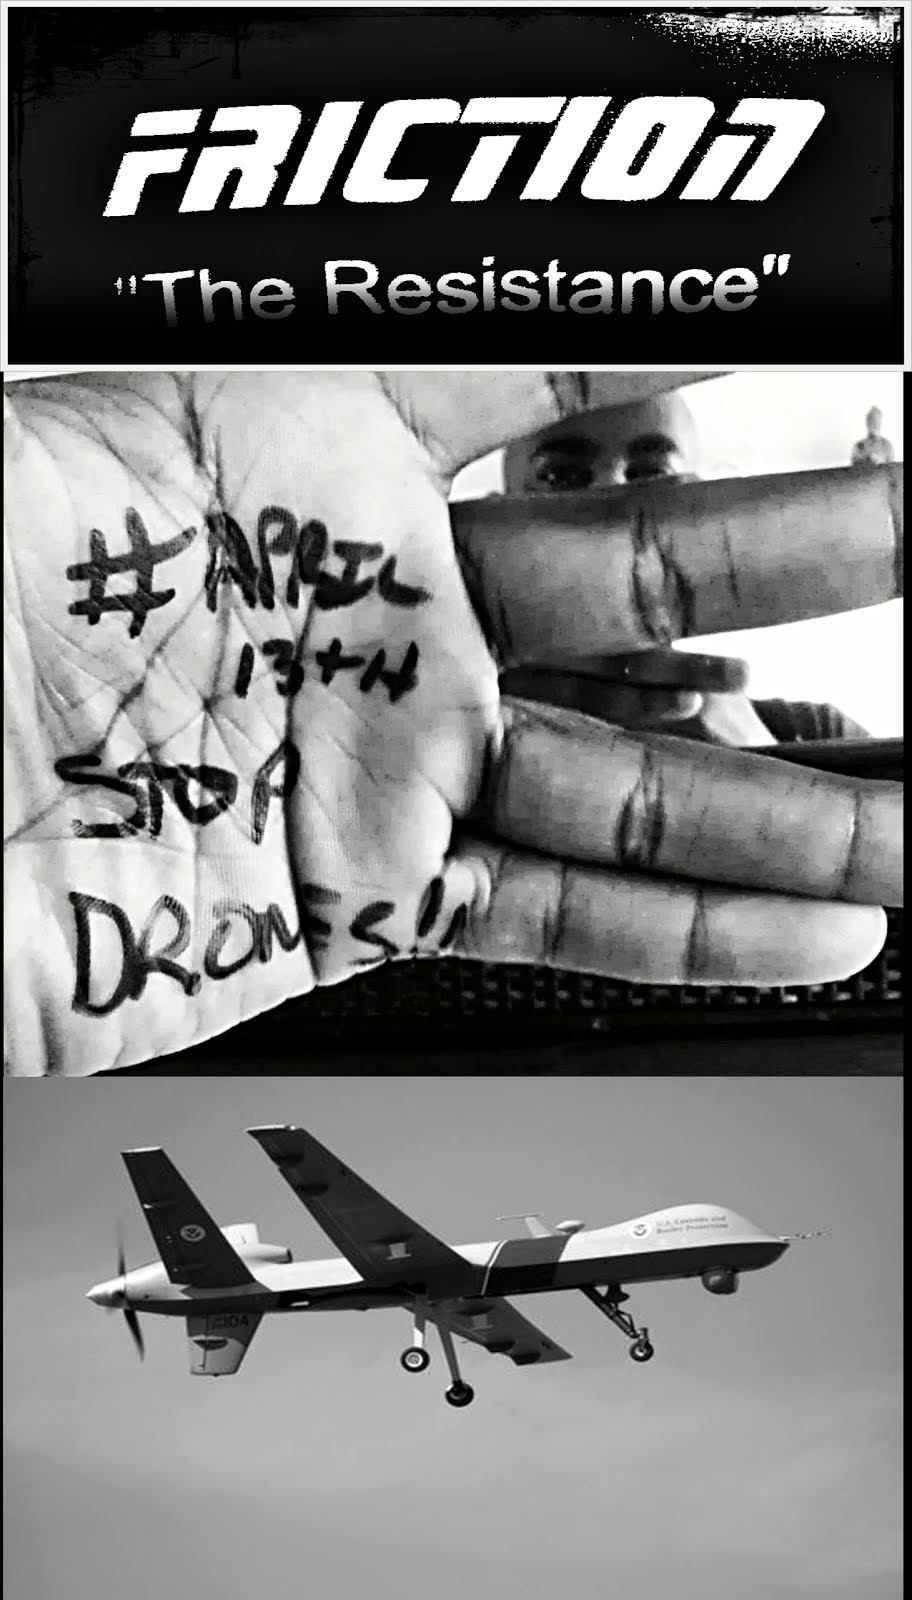 Stop Drones Campaign